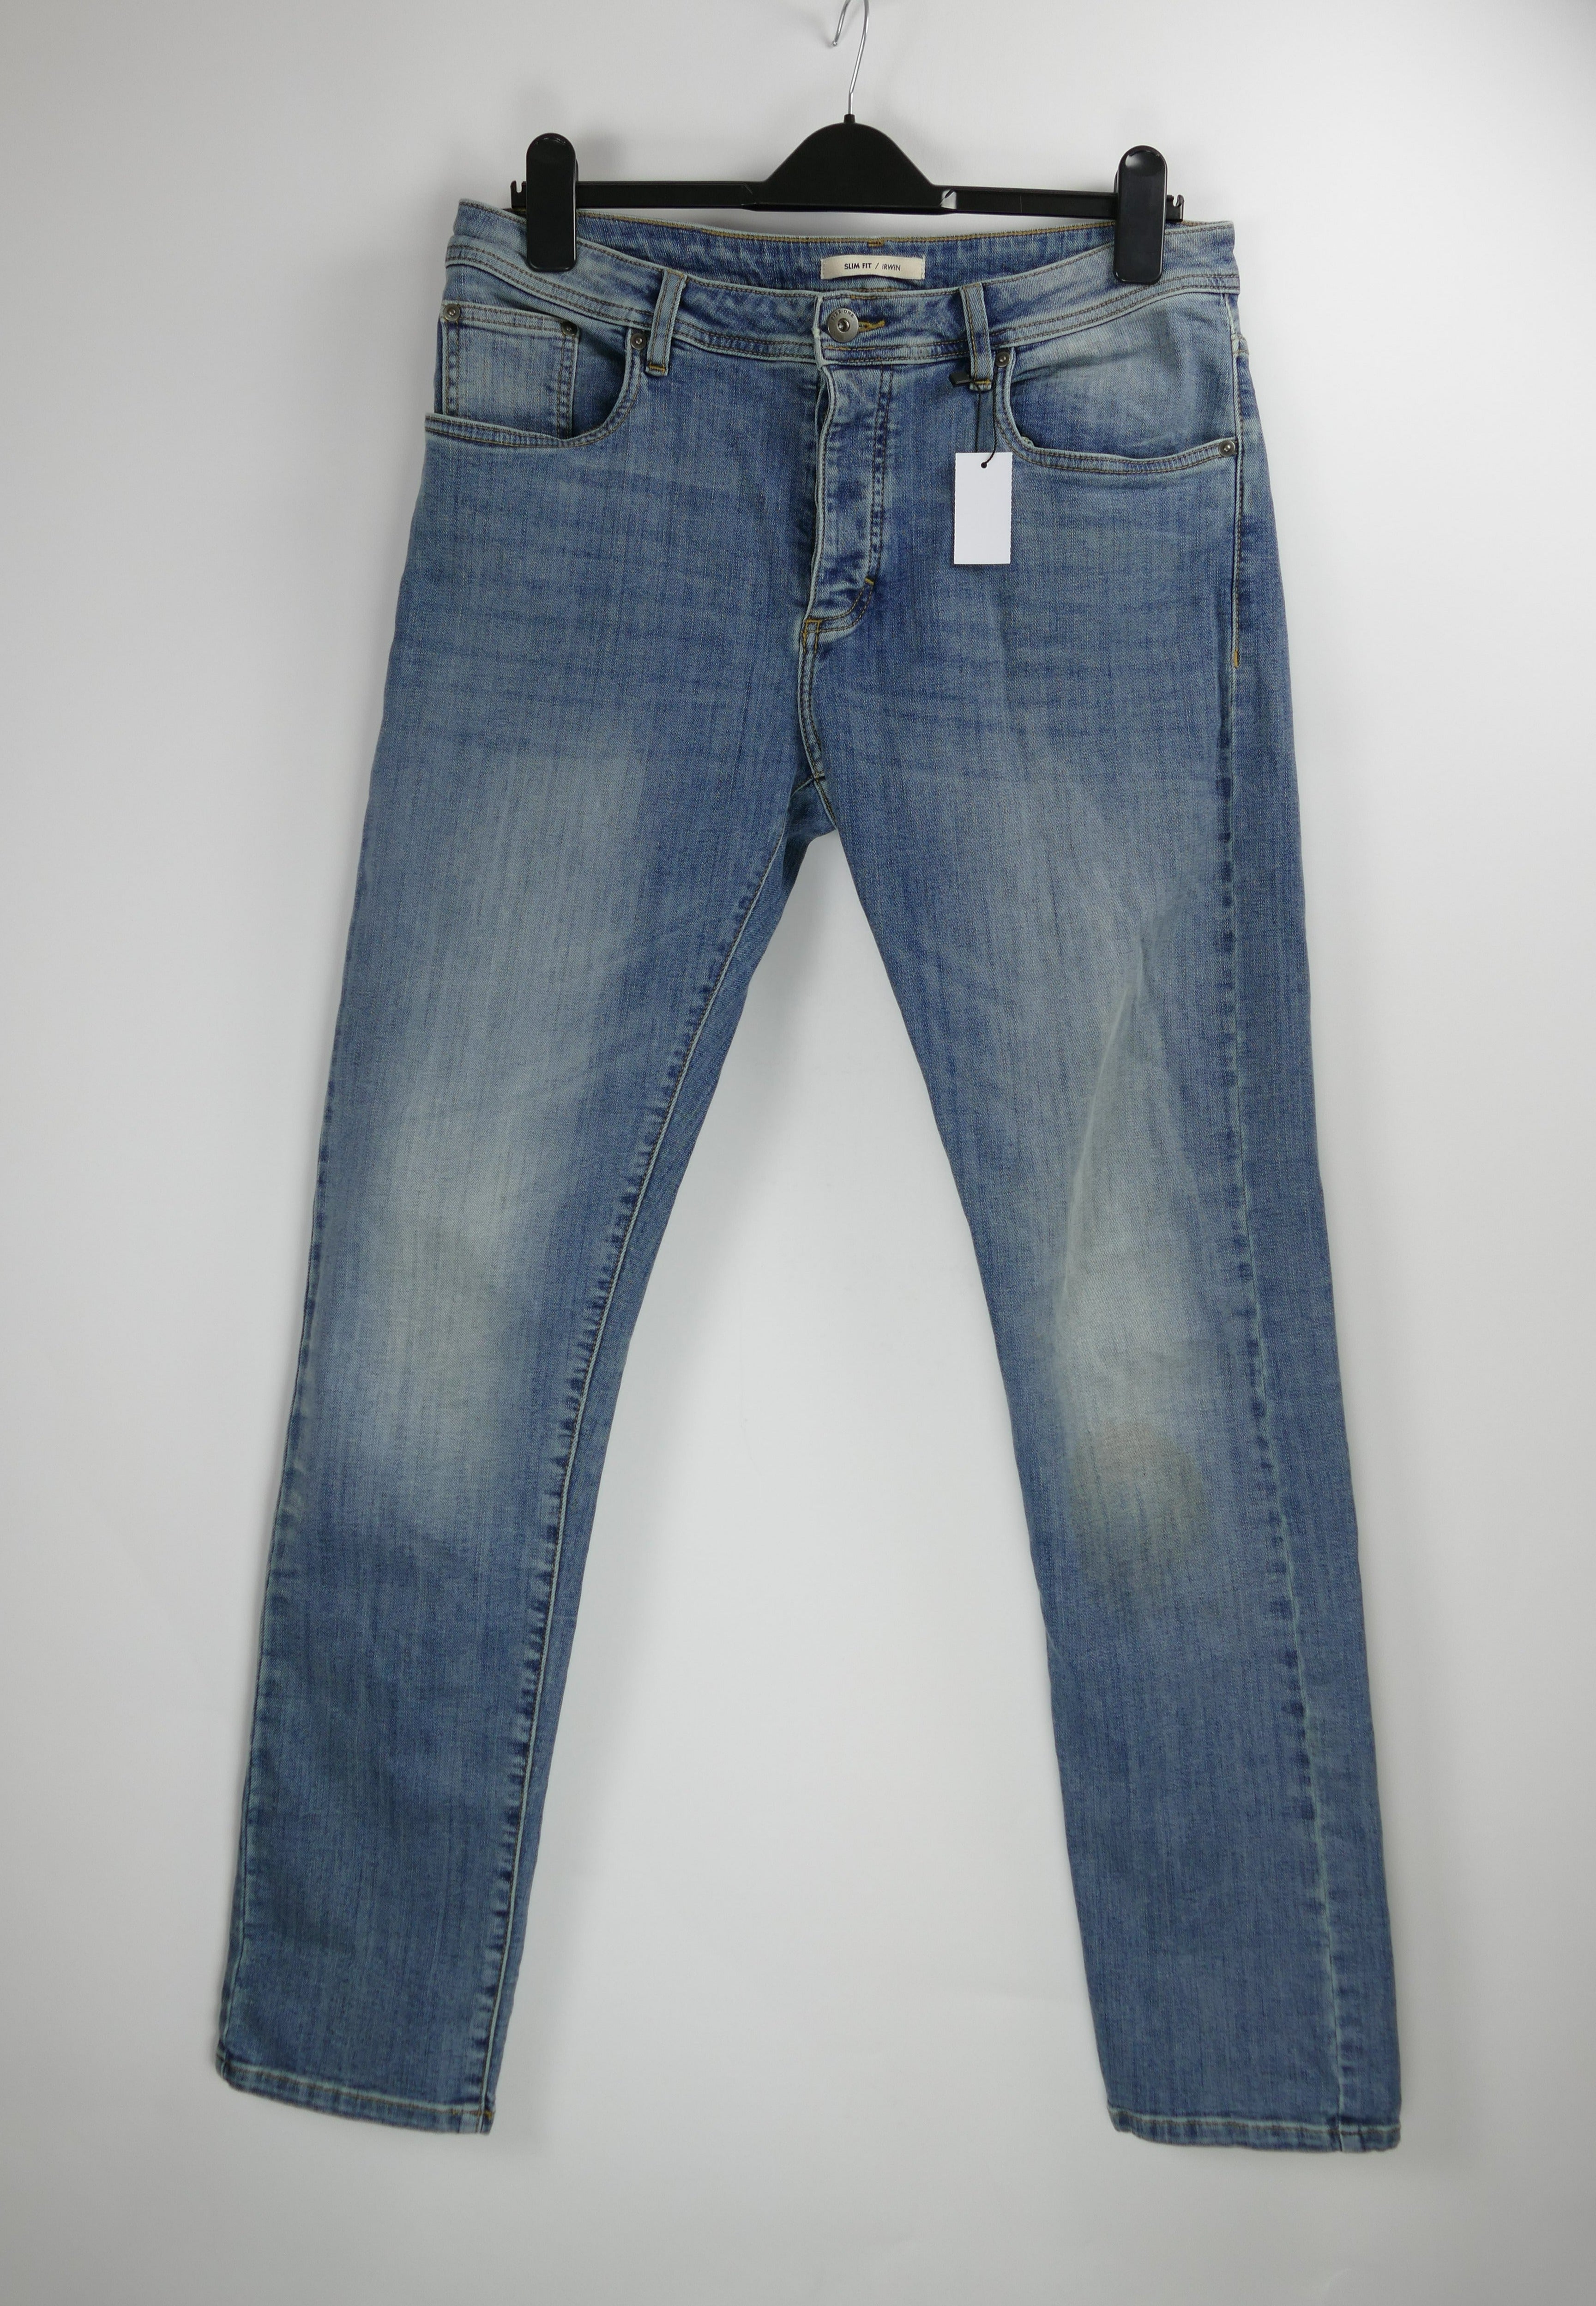 Blaue Herren Jeans, Gr. 33/34, PIER ONE